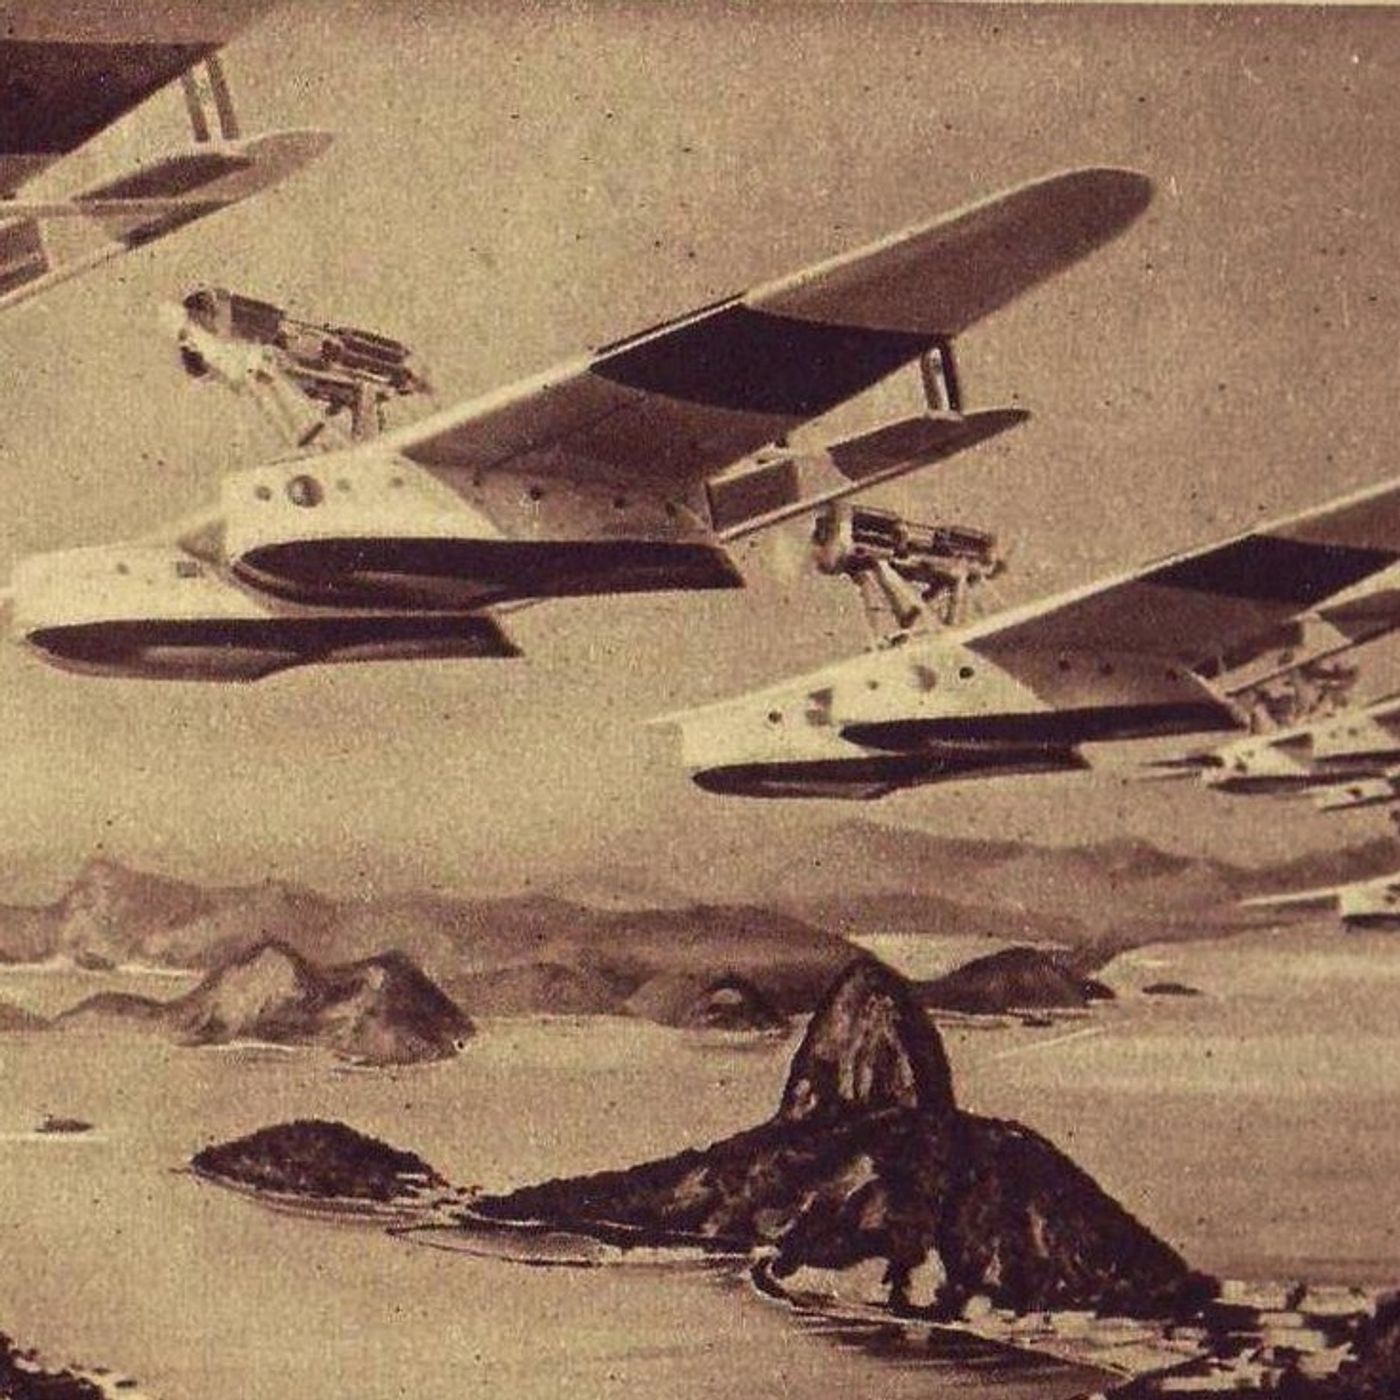 Come il fascismo usò l'aviazione come mezzo di propaganda - AperiStoria #109